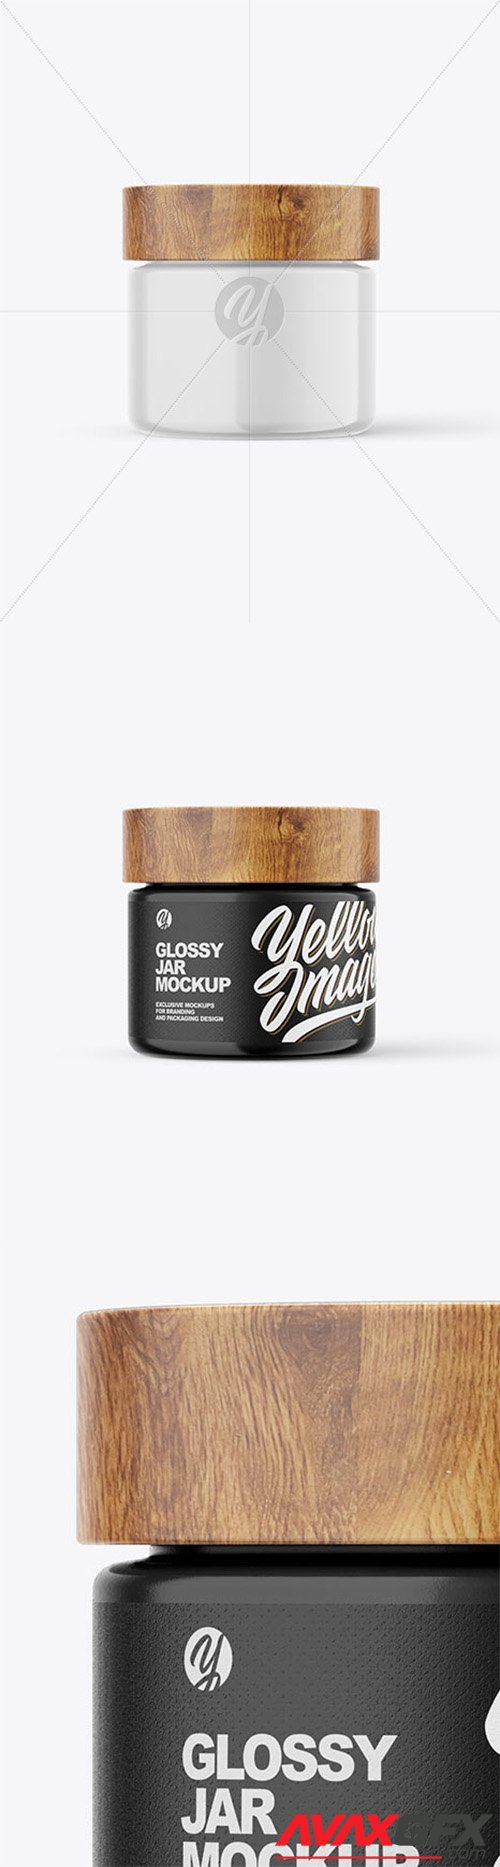 60ml Glossy Jar W/ Wooden Lid Mockup 80016